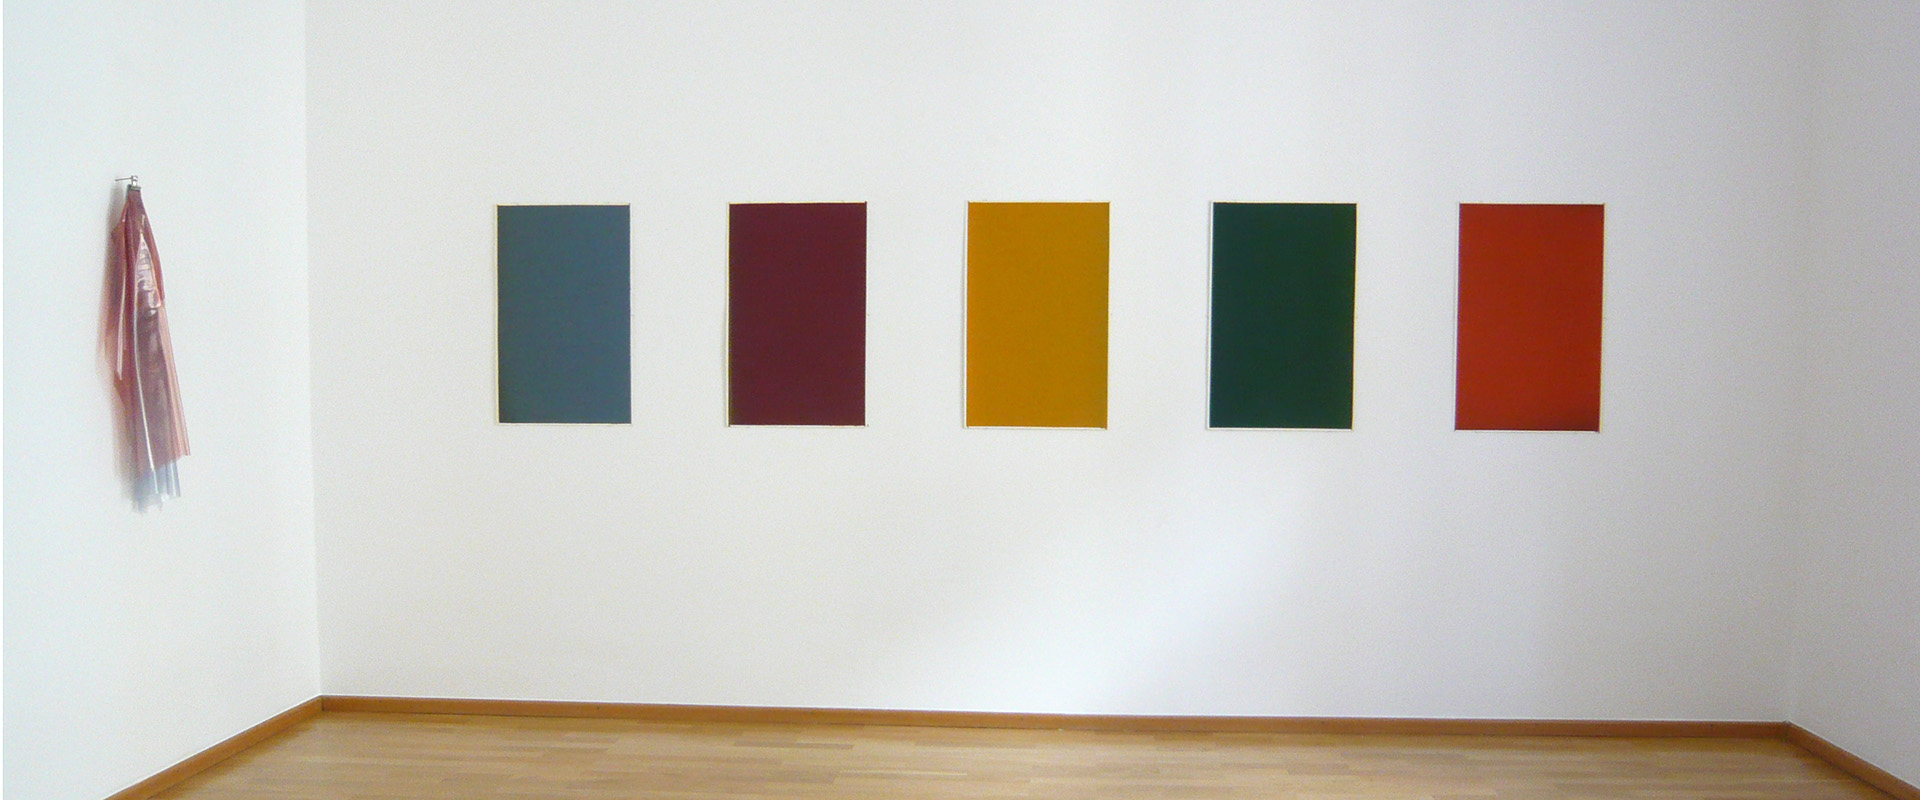 Ausstellungsansicht "Die Transparenz der Farbe. Matt McClune - Nick Terry", Galerie Renate Bender 2013